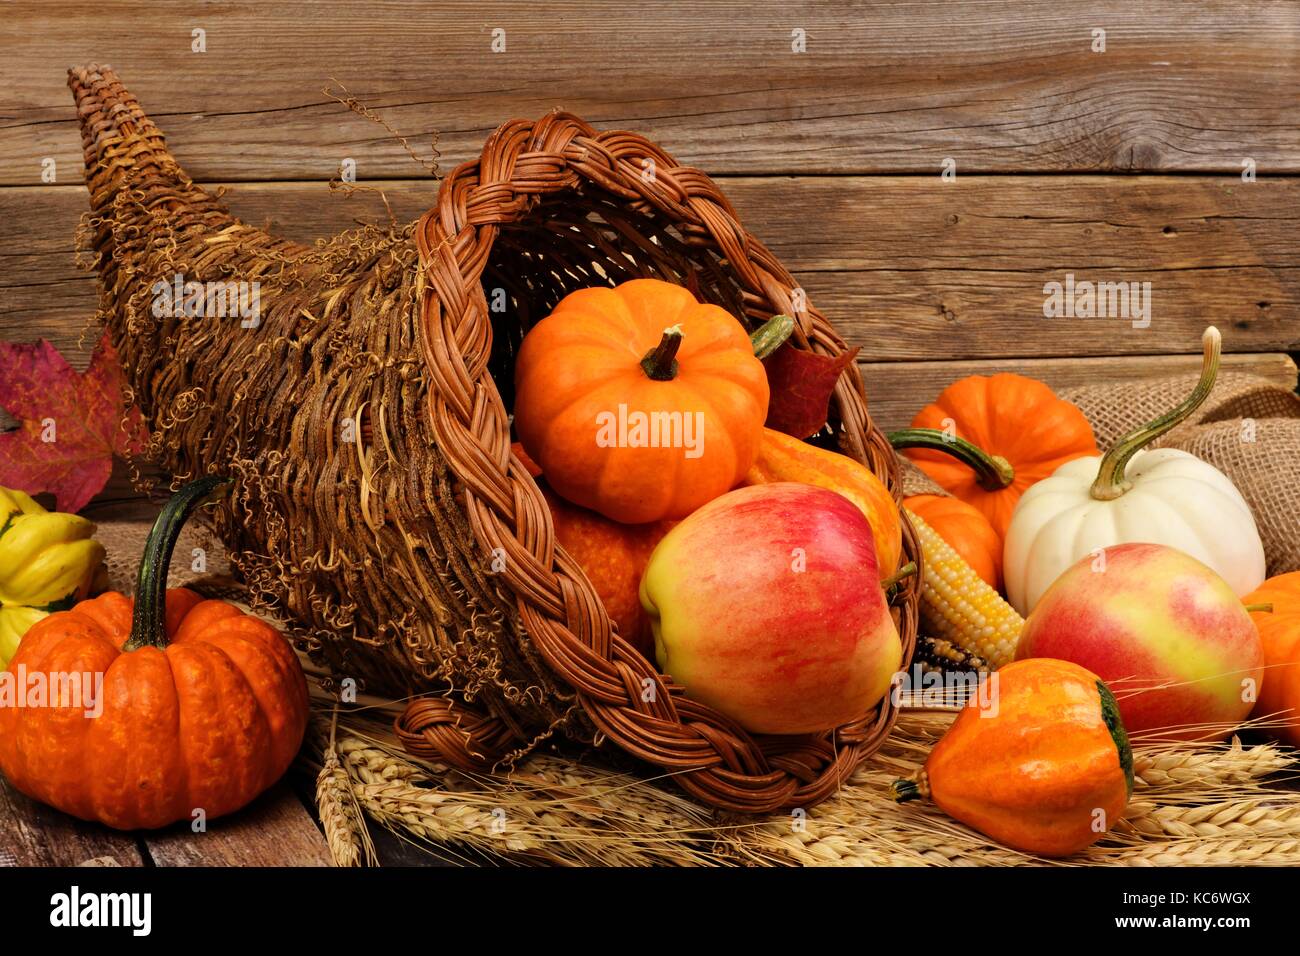 Thanksgiving cornucopia llena de calabazas y frutas contra un fondo de madera rústica Foto de stock